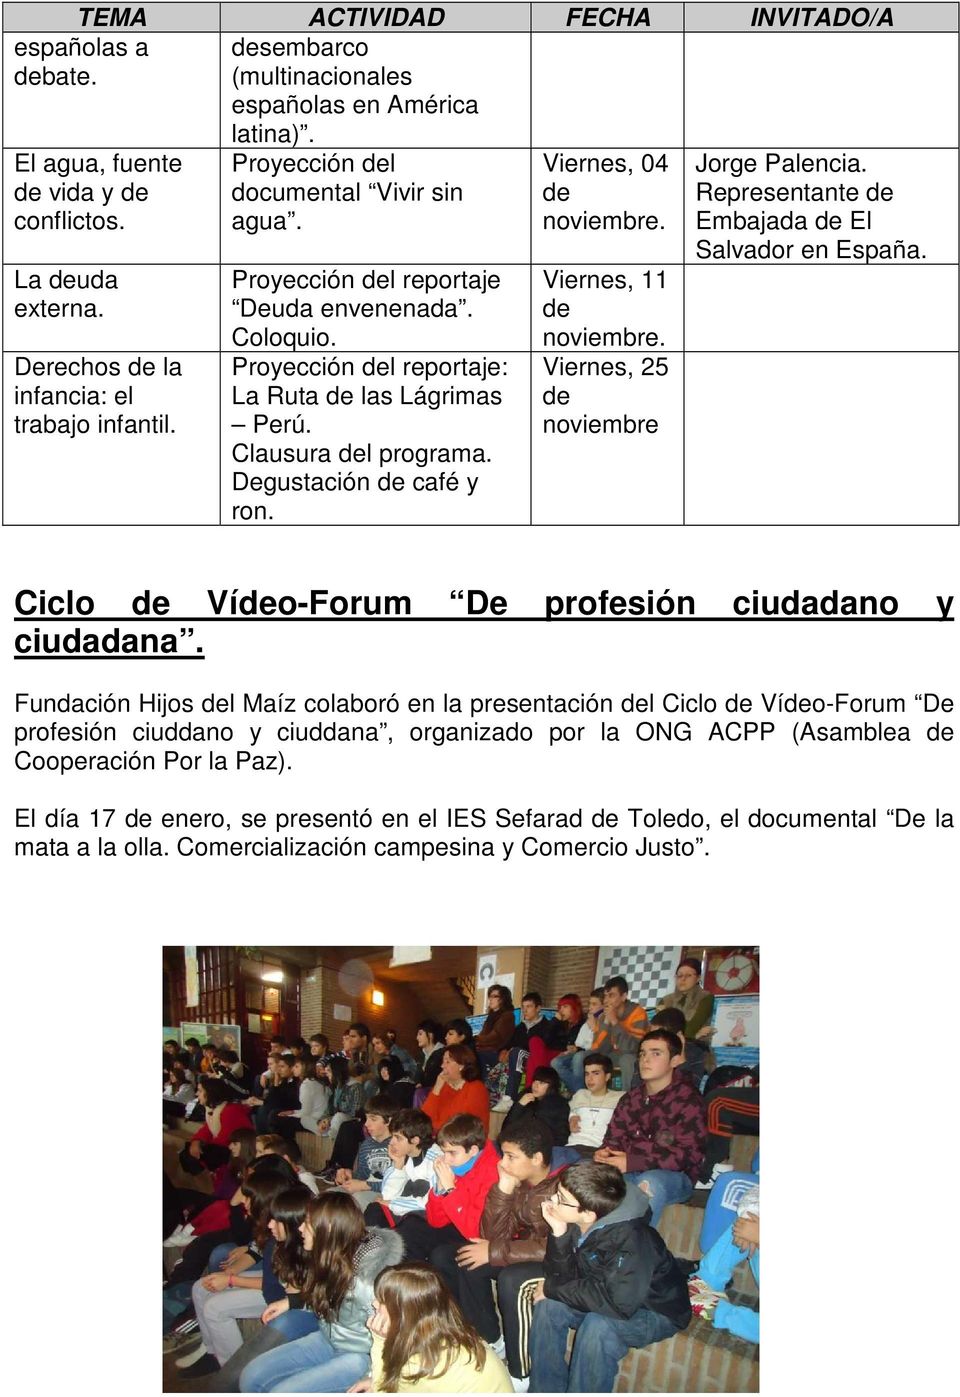 Viernes, 25 noviembre Jorge Palencia. Representante Embajada El Salvador en España. Ciclo Vío-Forum De profesión ciudadano y ciudadana.